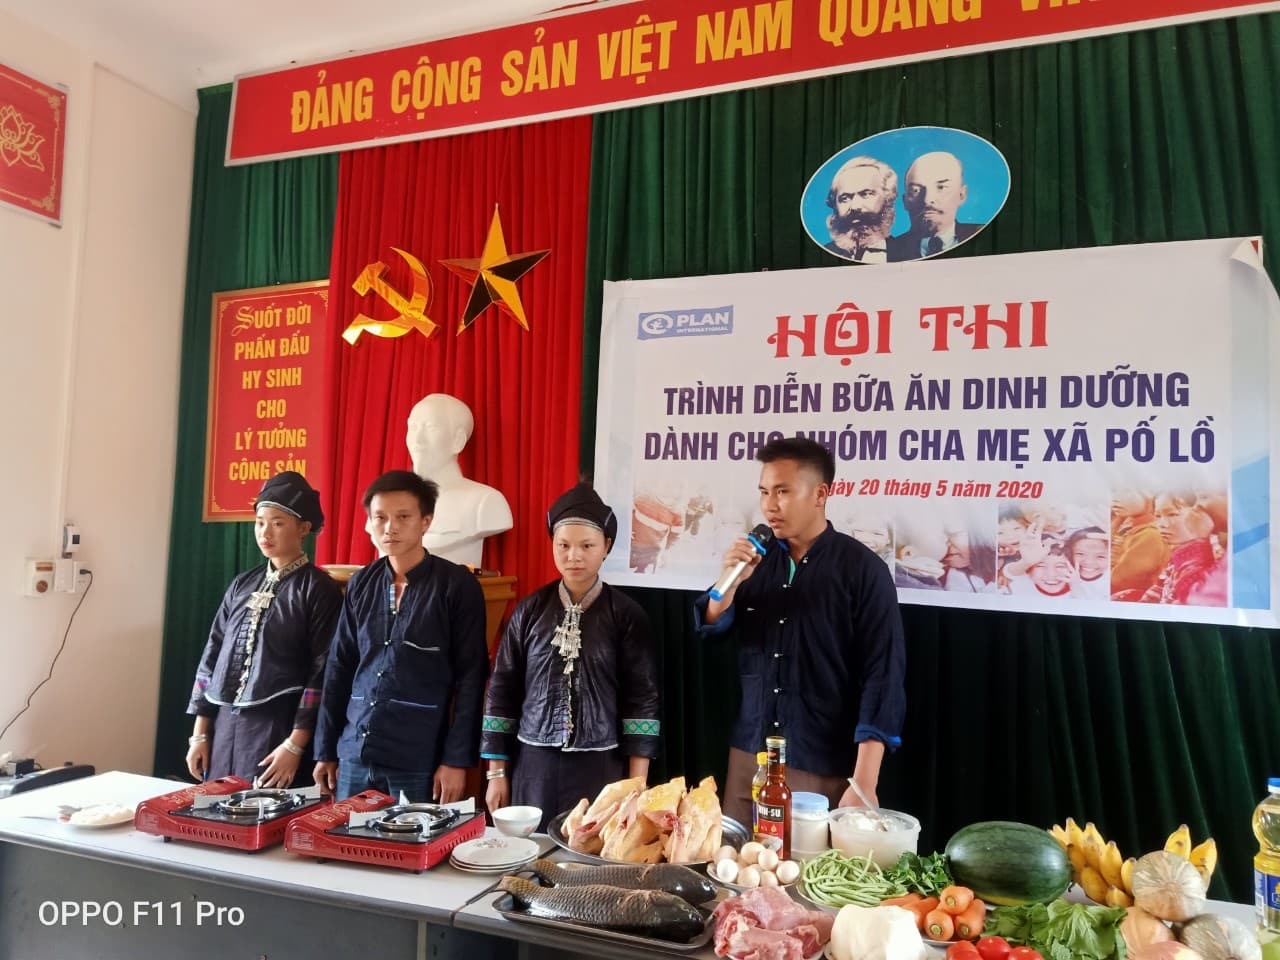 Trạm Y tế xã Pố Lồ huyện Hoàng Su Phì tổ chức hội thi “Trình diễn bữa ăn dinh dưỡng dành cho nhóm cha mẹ xã Pố Lồ” năm 2020